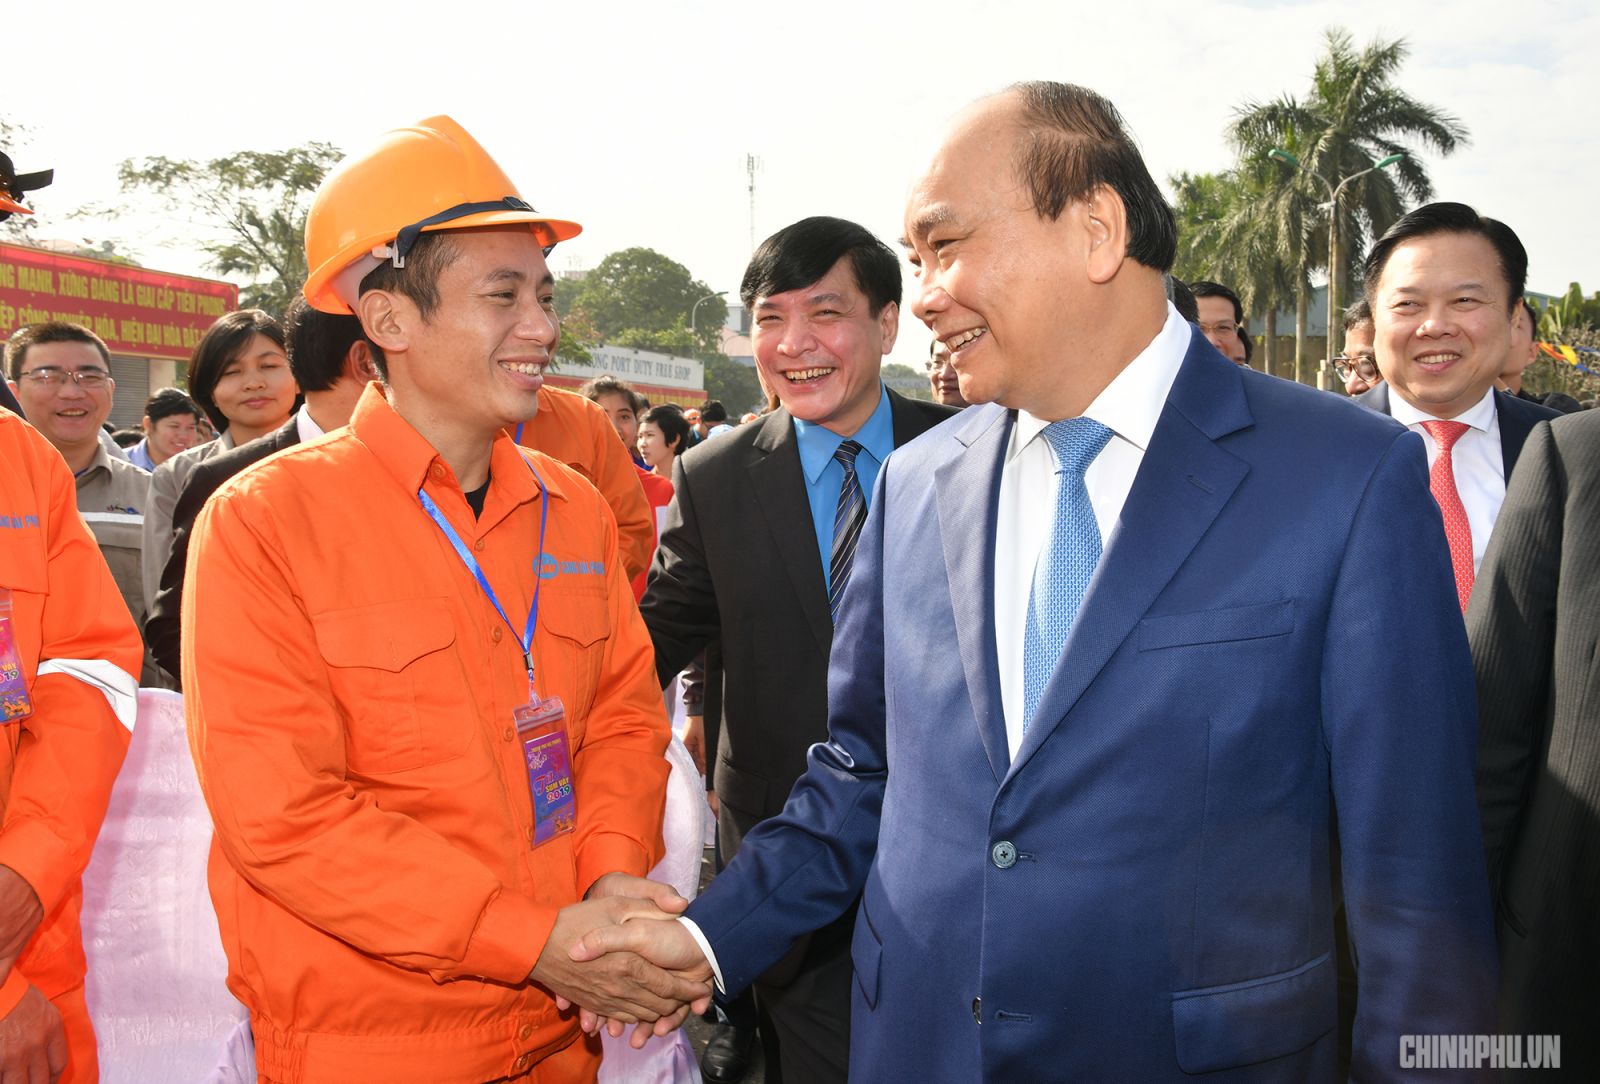 Thủ tướng Nguyễn Xuân Phúc thăm hỏi, nói chuyện với công nhân lao động - Ảnh: VGP/Quang Hiếu